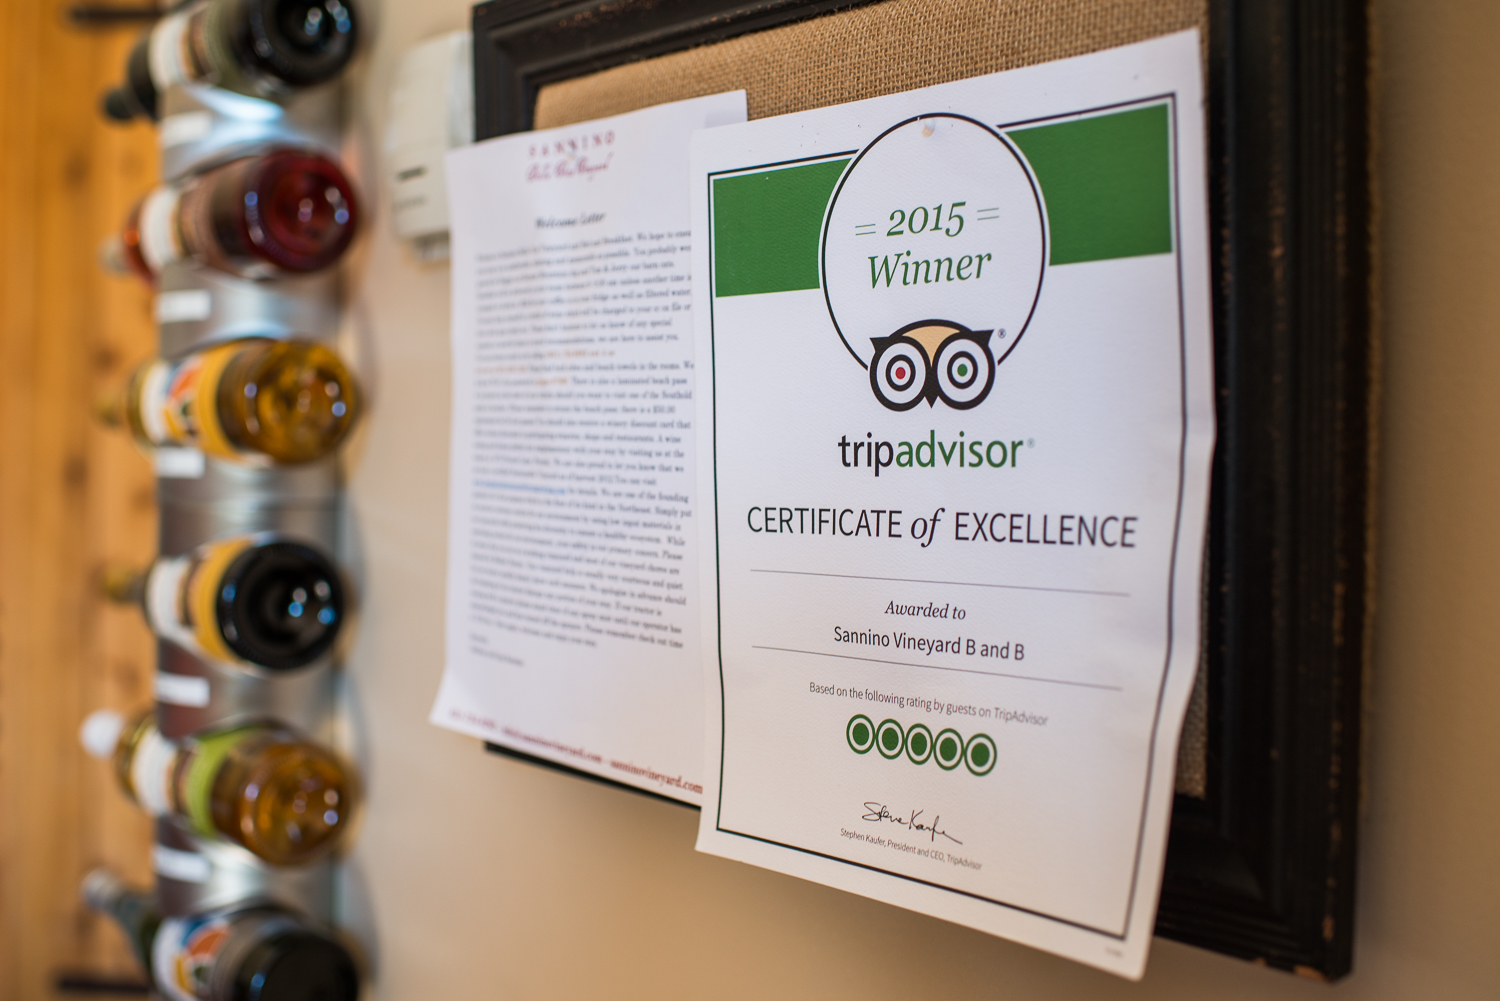 trip advisor winner certificate on wall with wine bottle in background